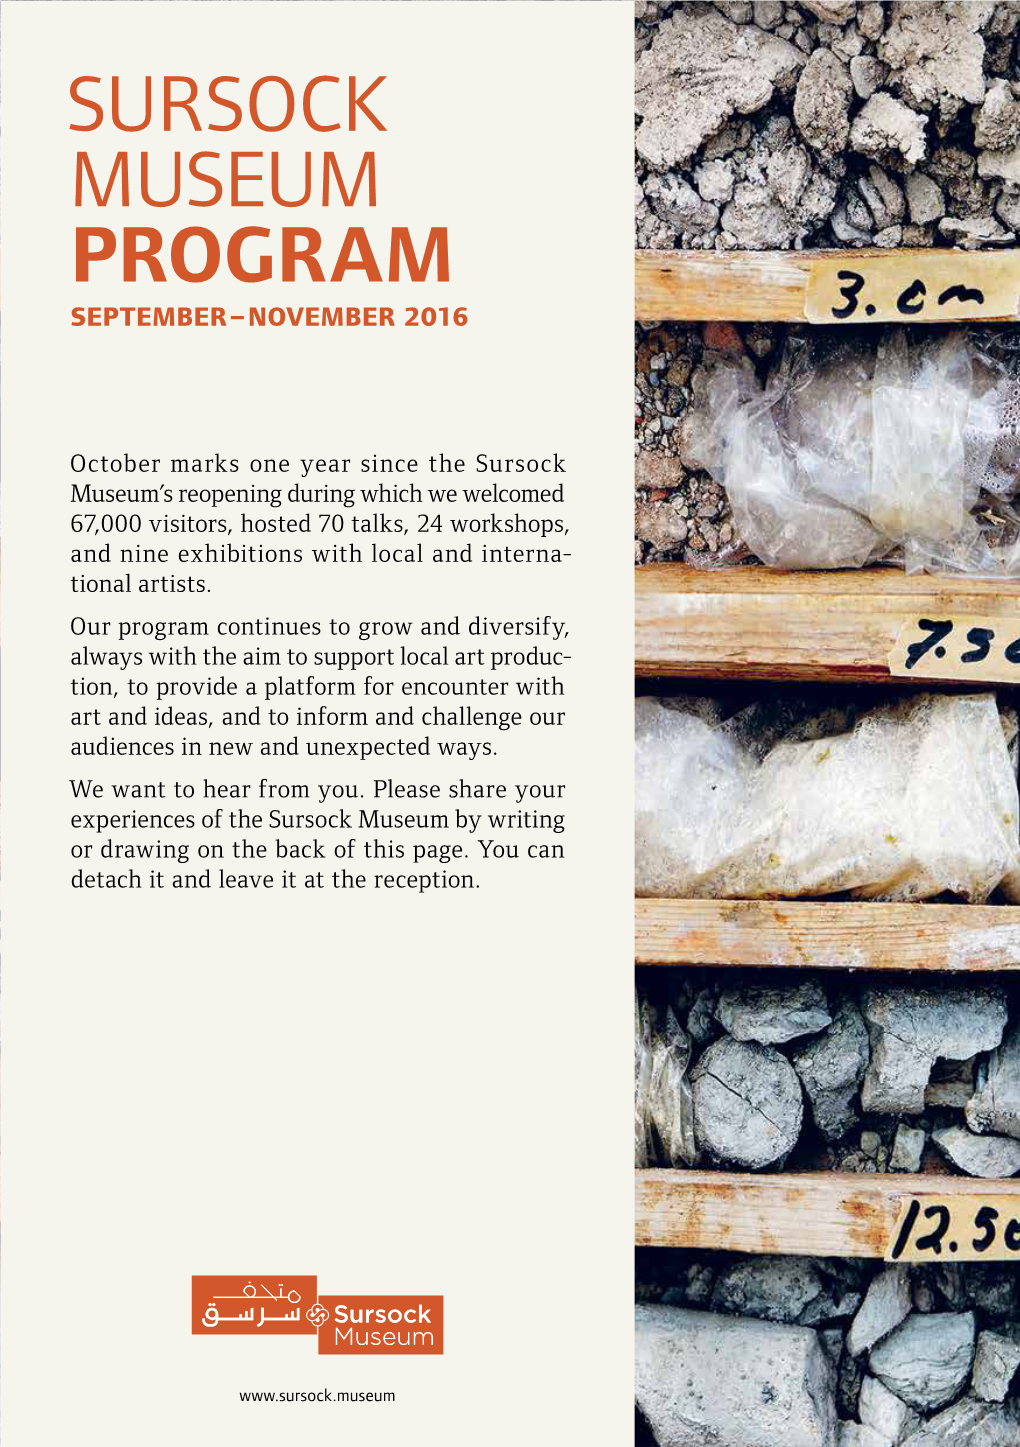 Sursock Museum Program September – November 2016